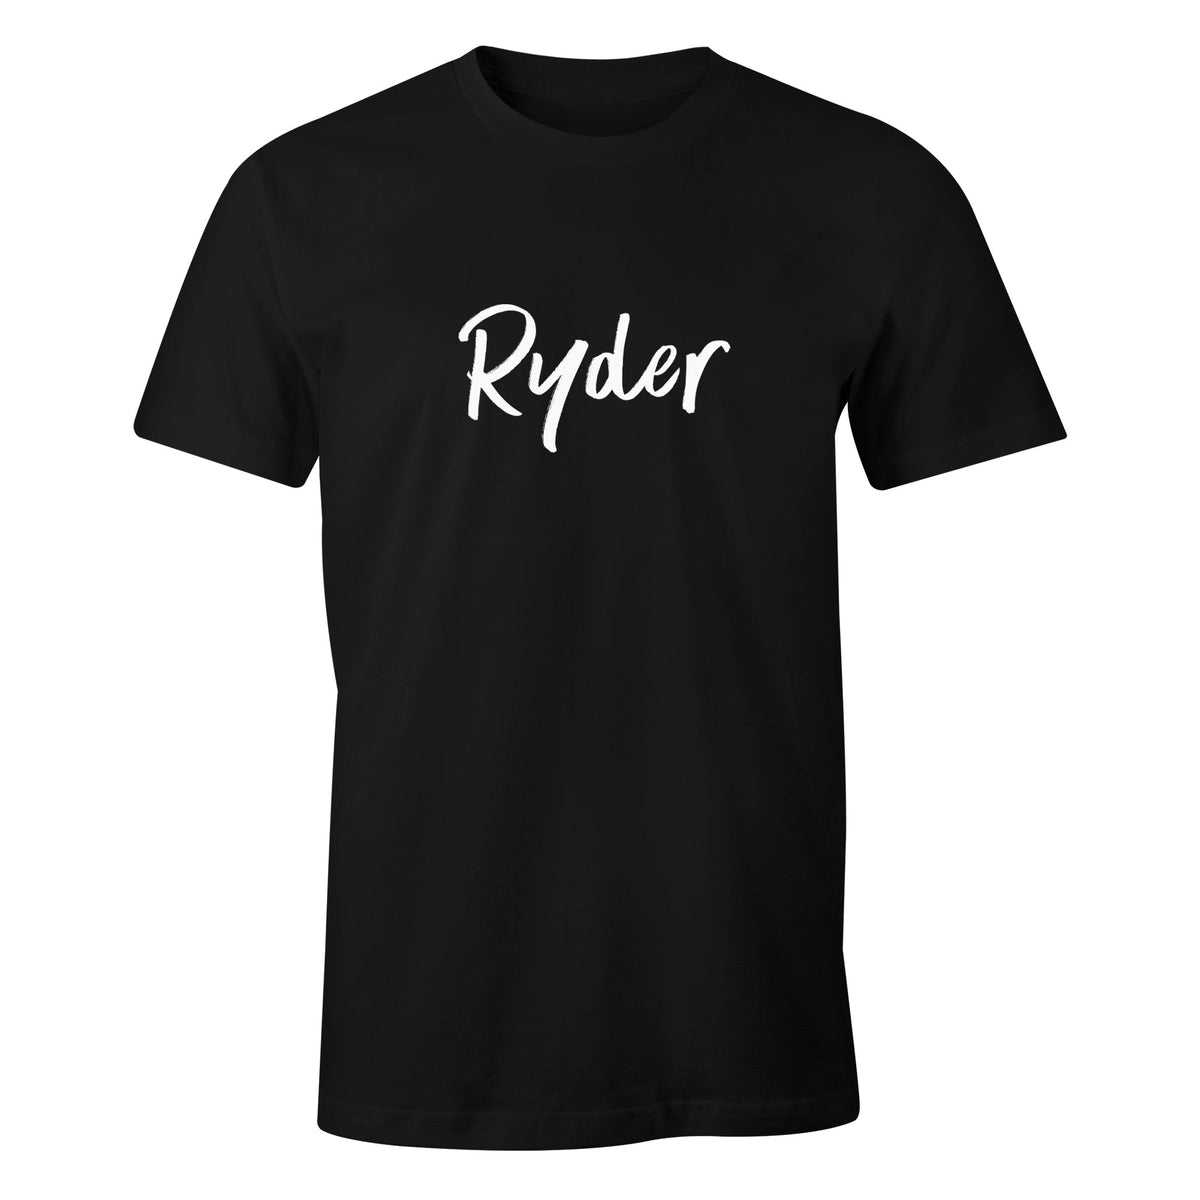 Ryder T-Shirt - Ryder Boards